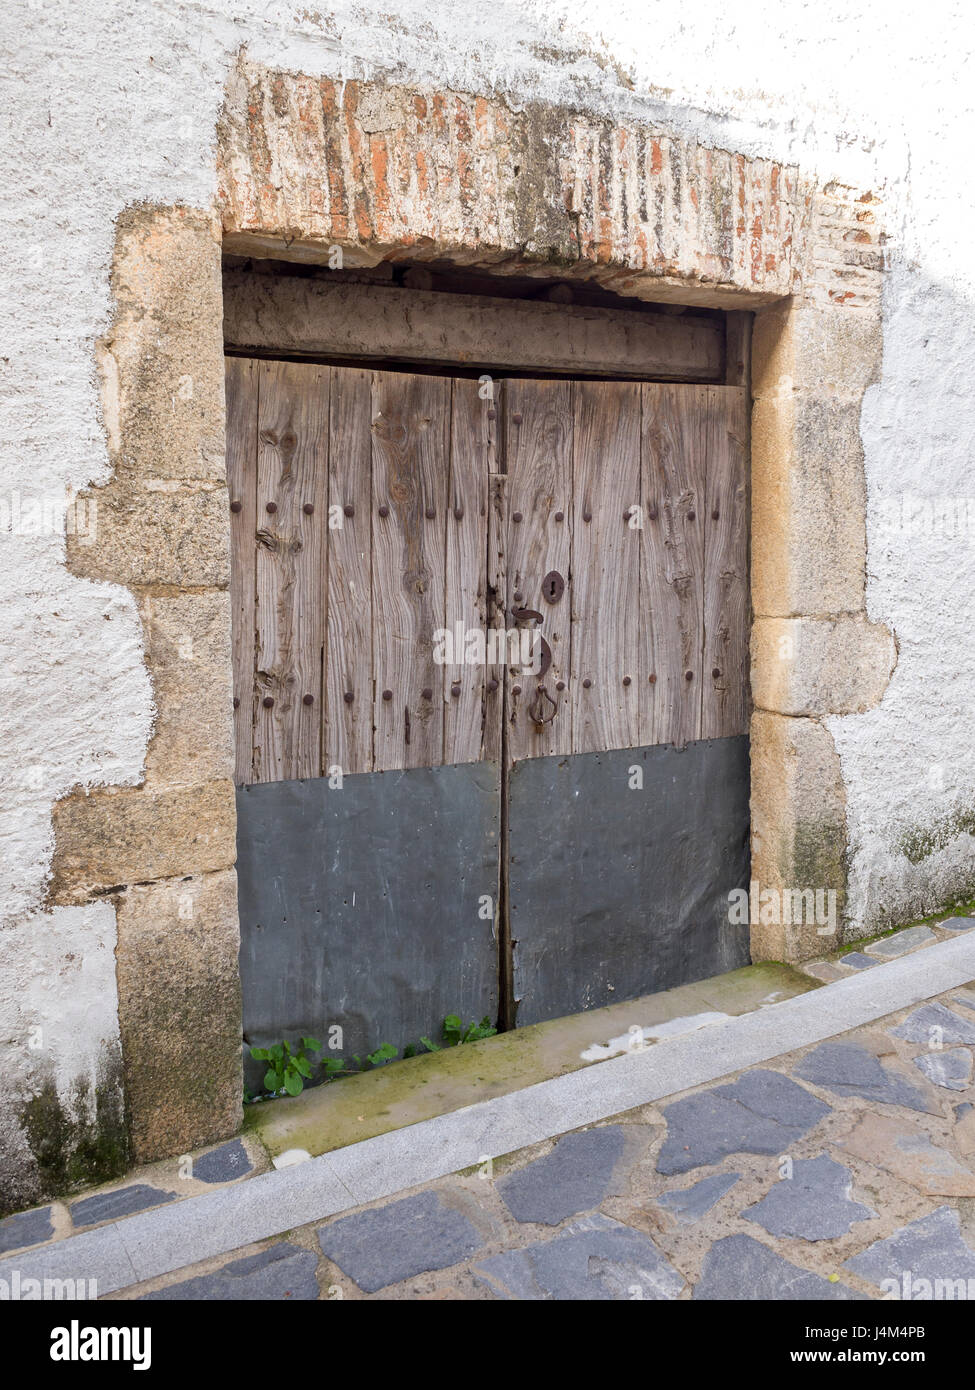 Detalle de puerta antigua de madera en Cañaveral, Cáceres, Extremadura, España. Stock Photo